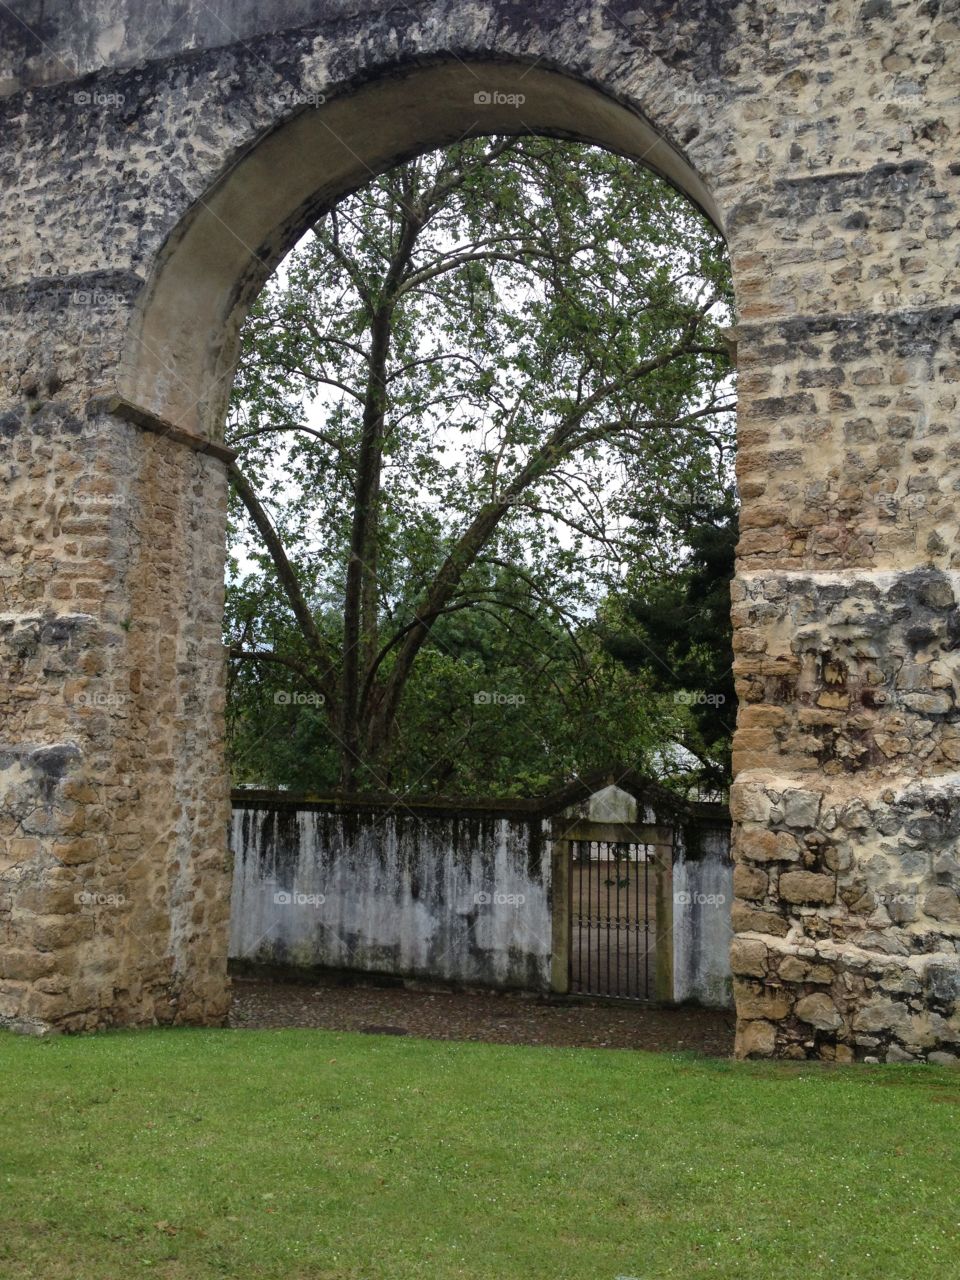 Botanical garden seen through an old arch